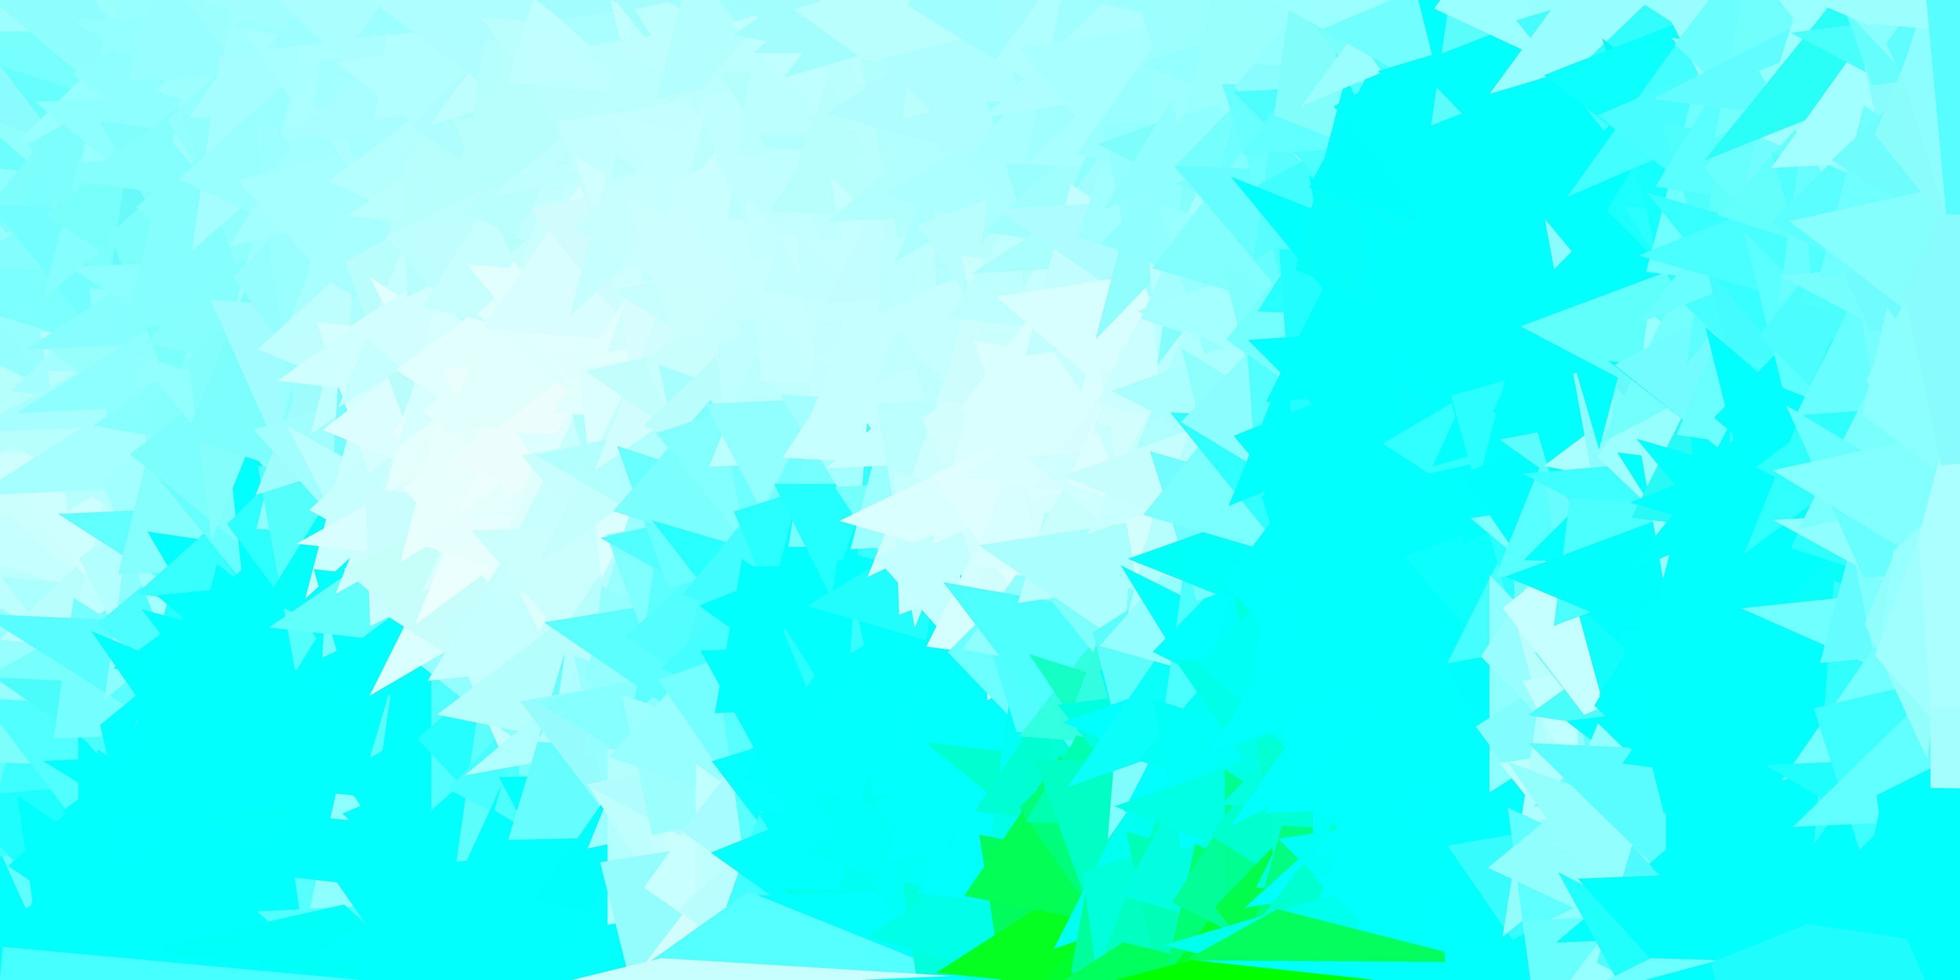 pano de fundo do triângulo abstrato do vetor azul claro, verde.